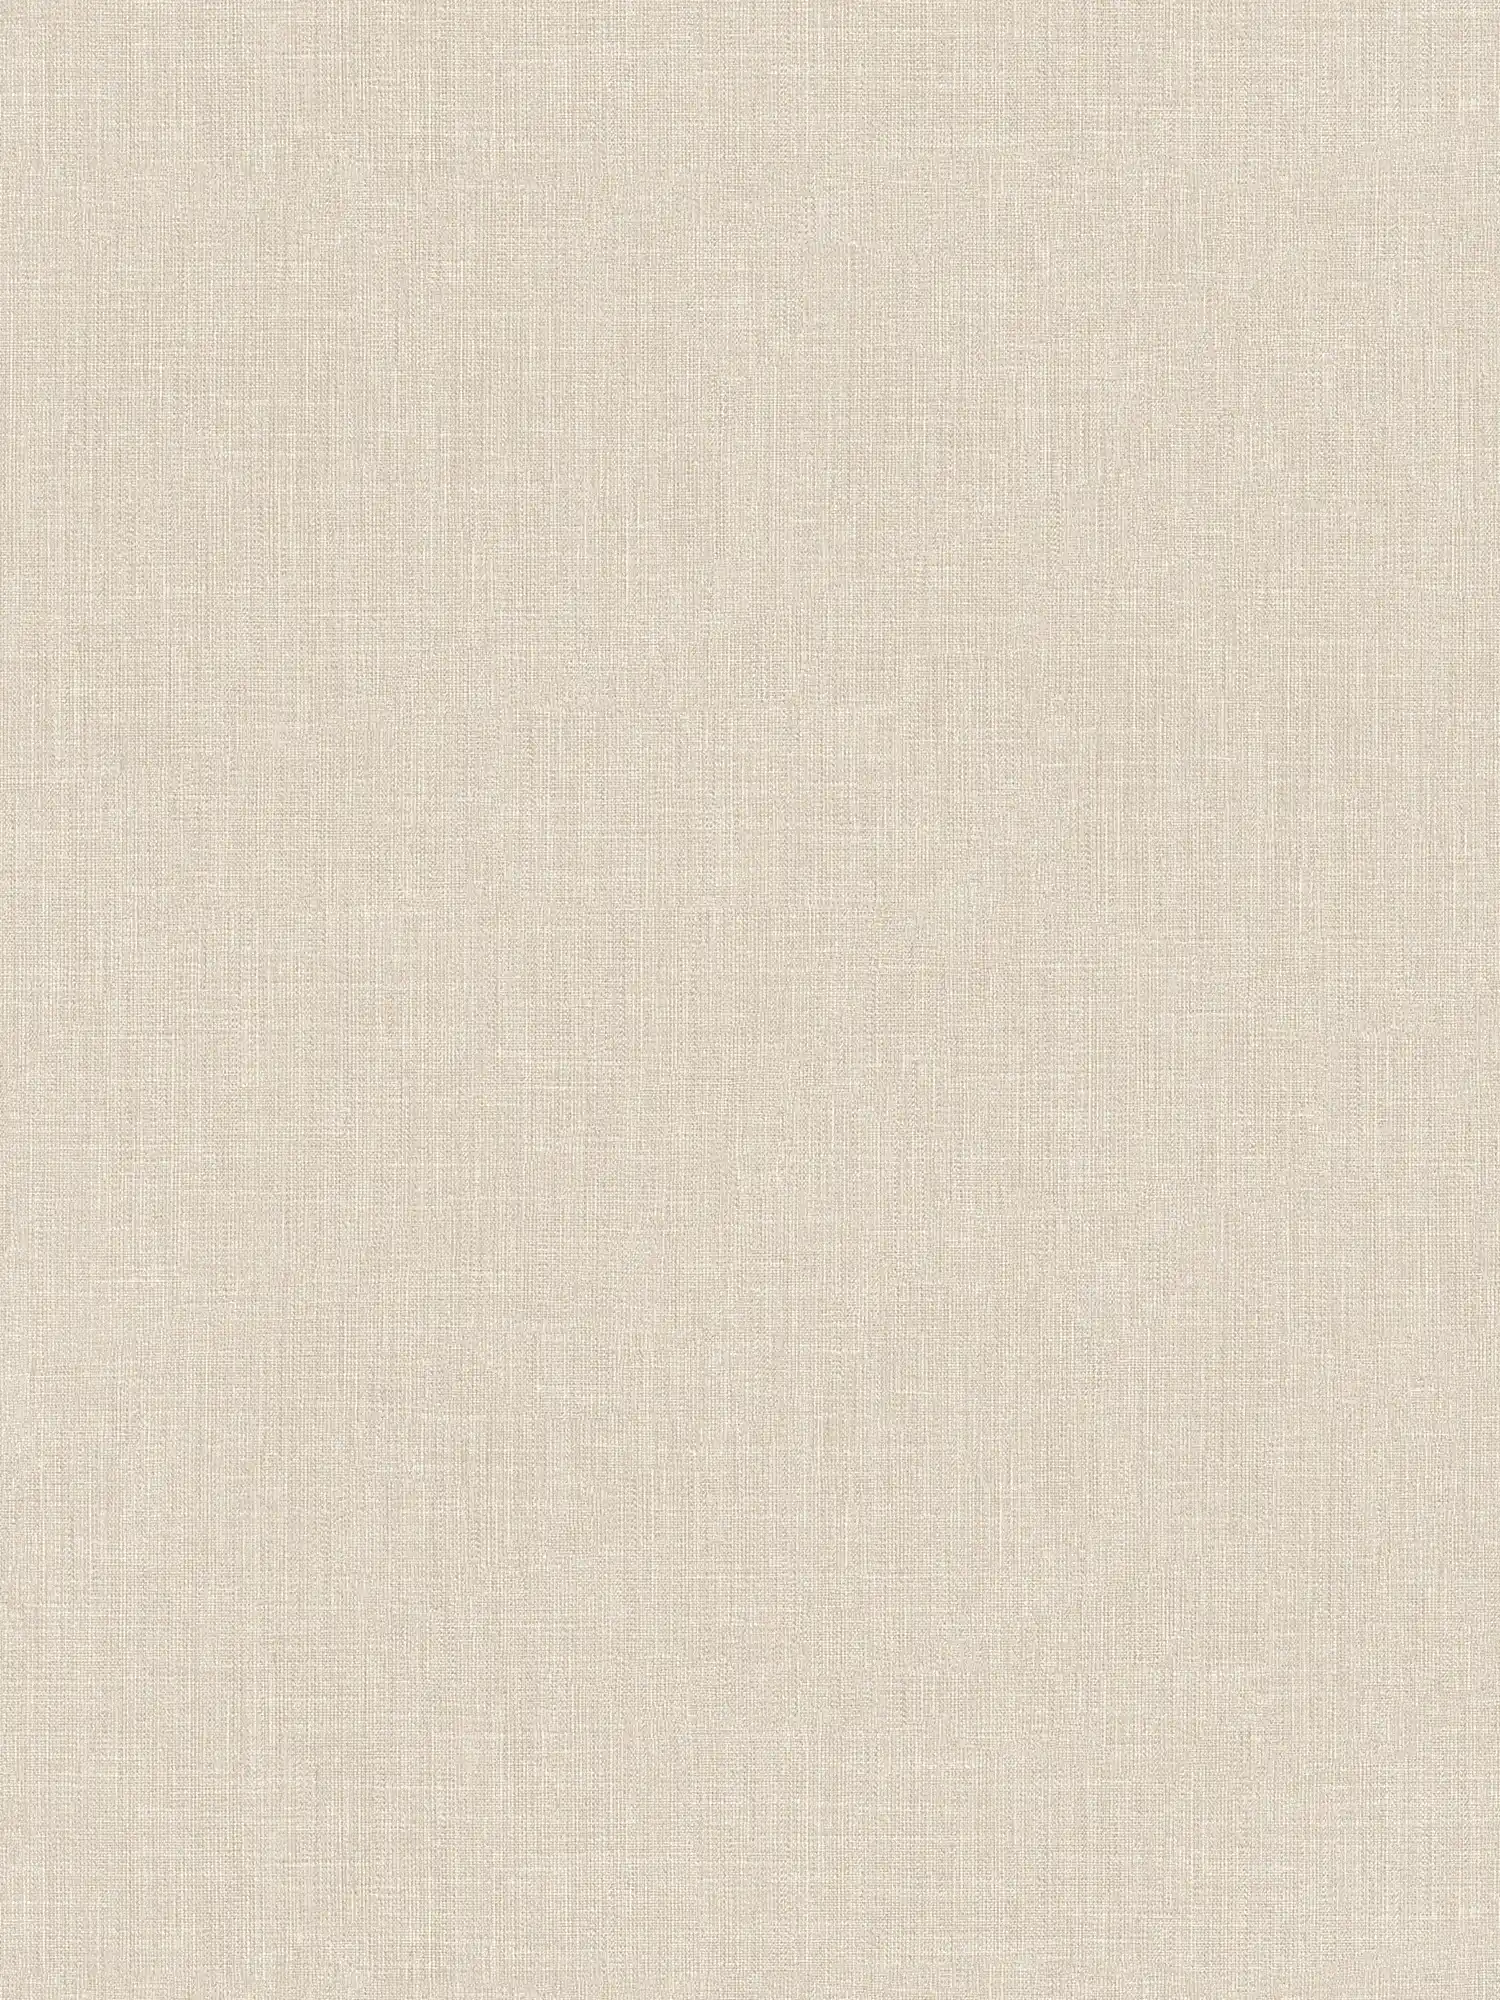 Papel pintado no tejido con aspecto de lino moteado beige y estructura textil
